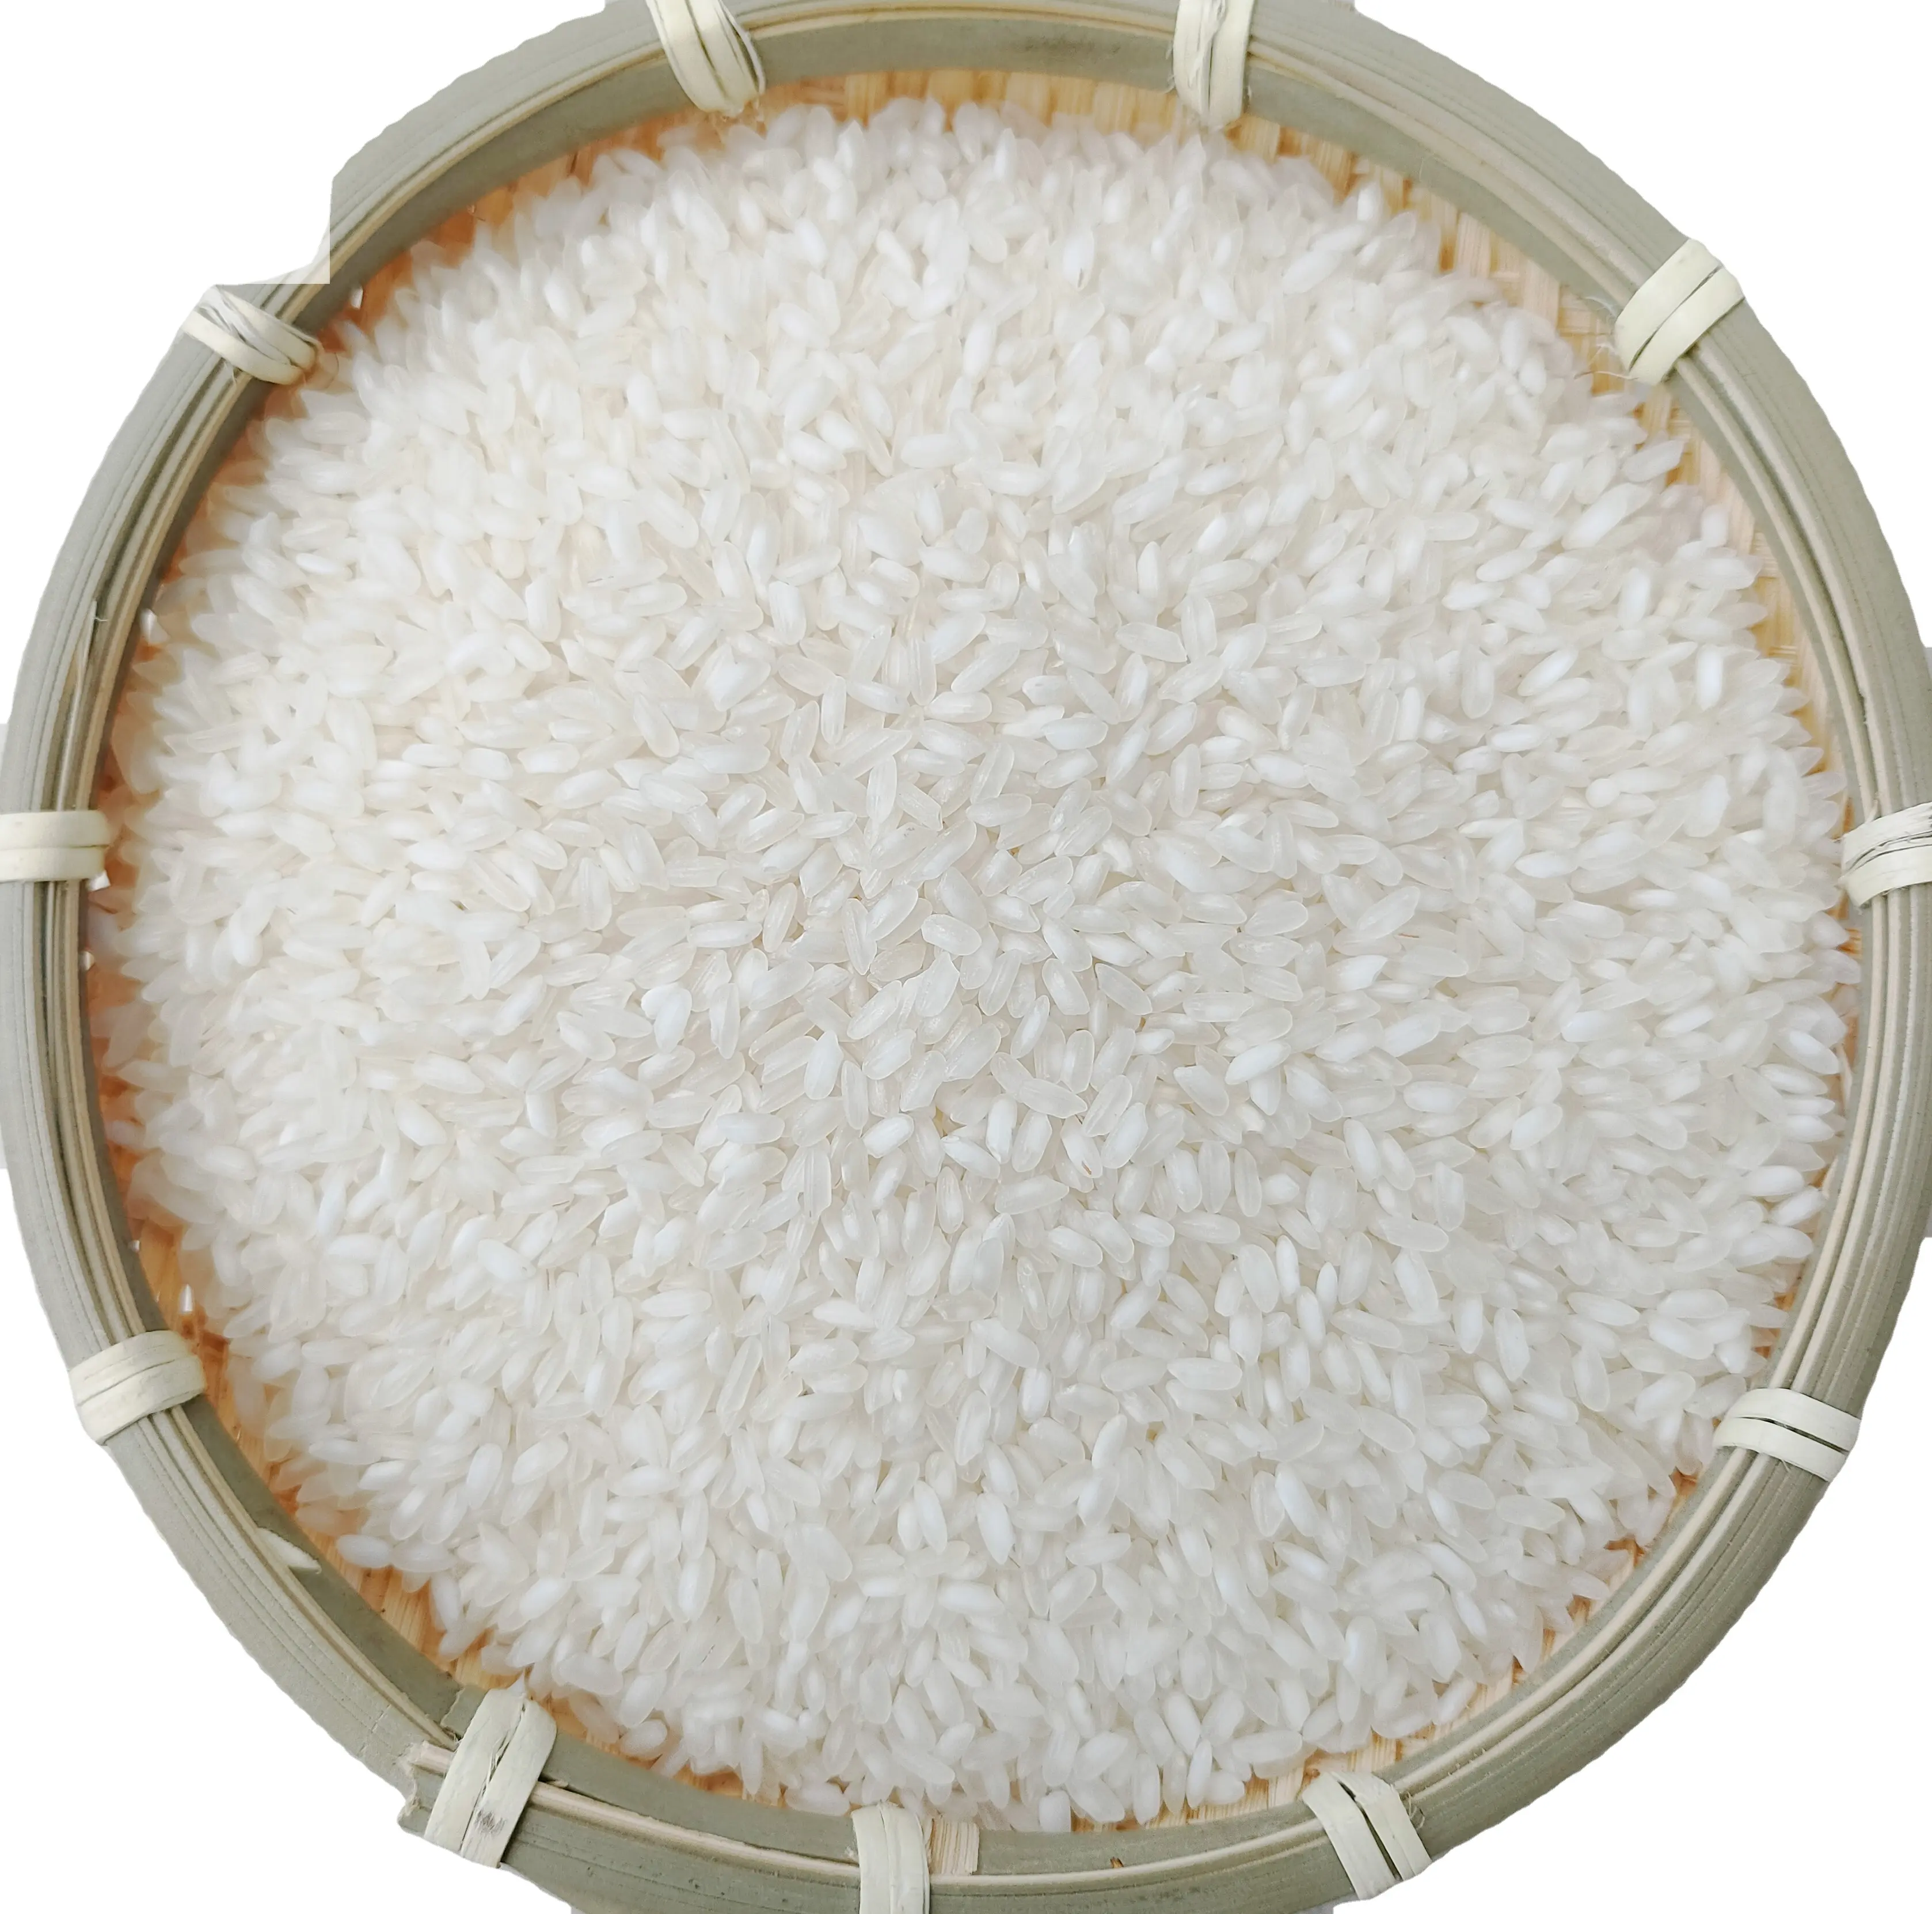 Produit le plus vendu-Riz en fleurs de riz moyen, riz éponge du Vietnam de haute qualité Contact + 840769340108 Ms.Anna